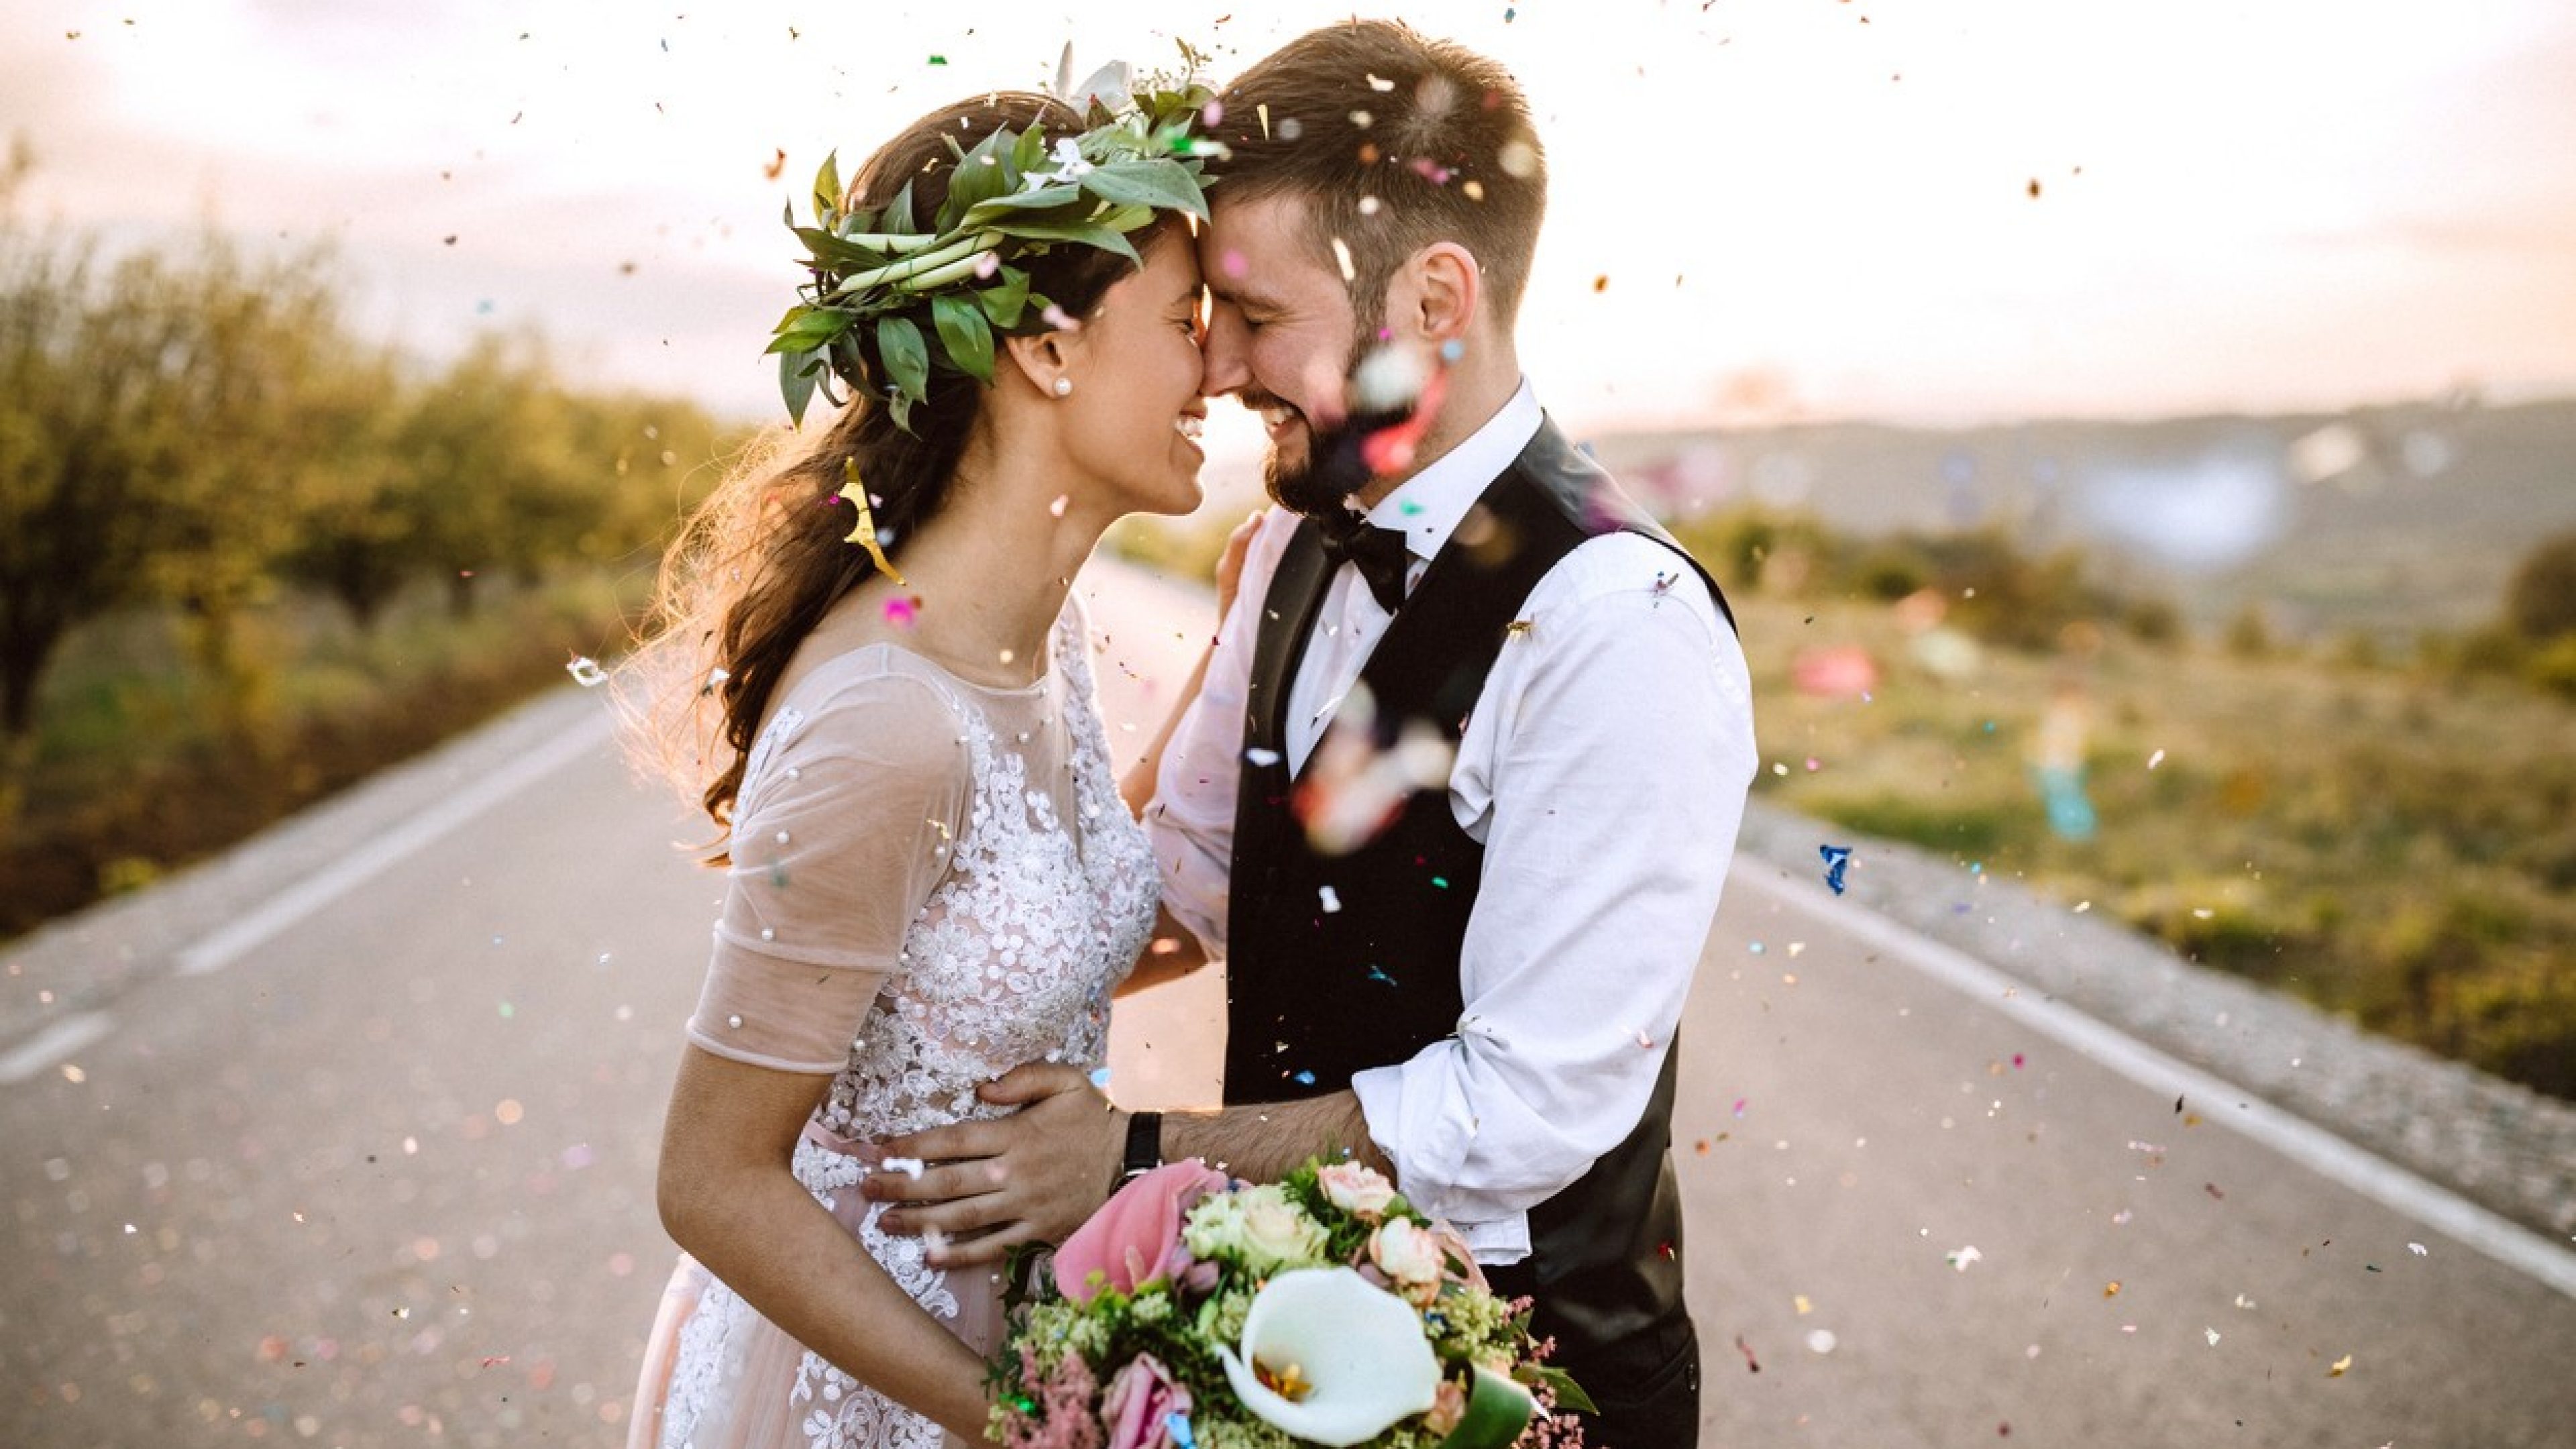 Verliebtes Hochzeitspaar in Hochzeitskleid und Hochzeitsanzug steht auf einer Strasse, vor ihm wird Konfetti in die Luft geworfen.